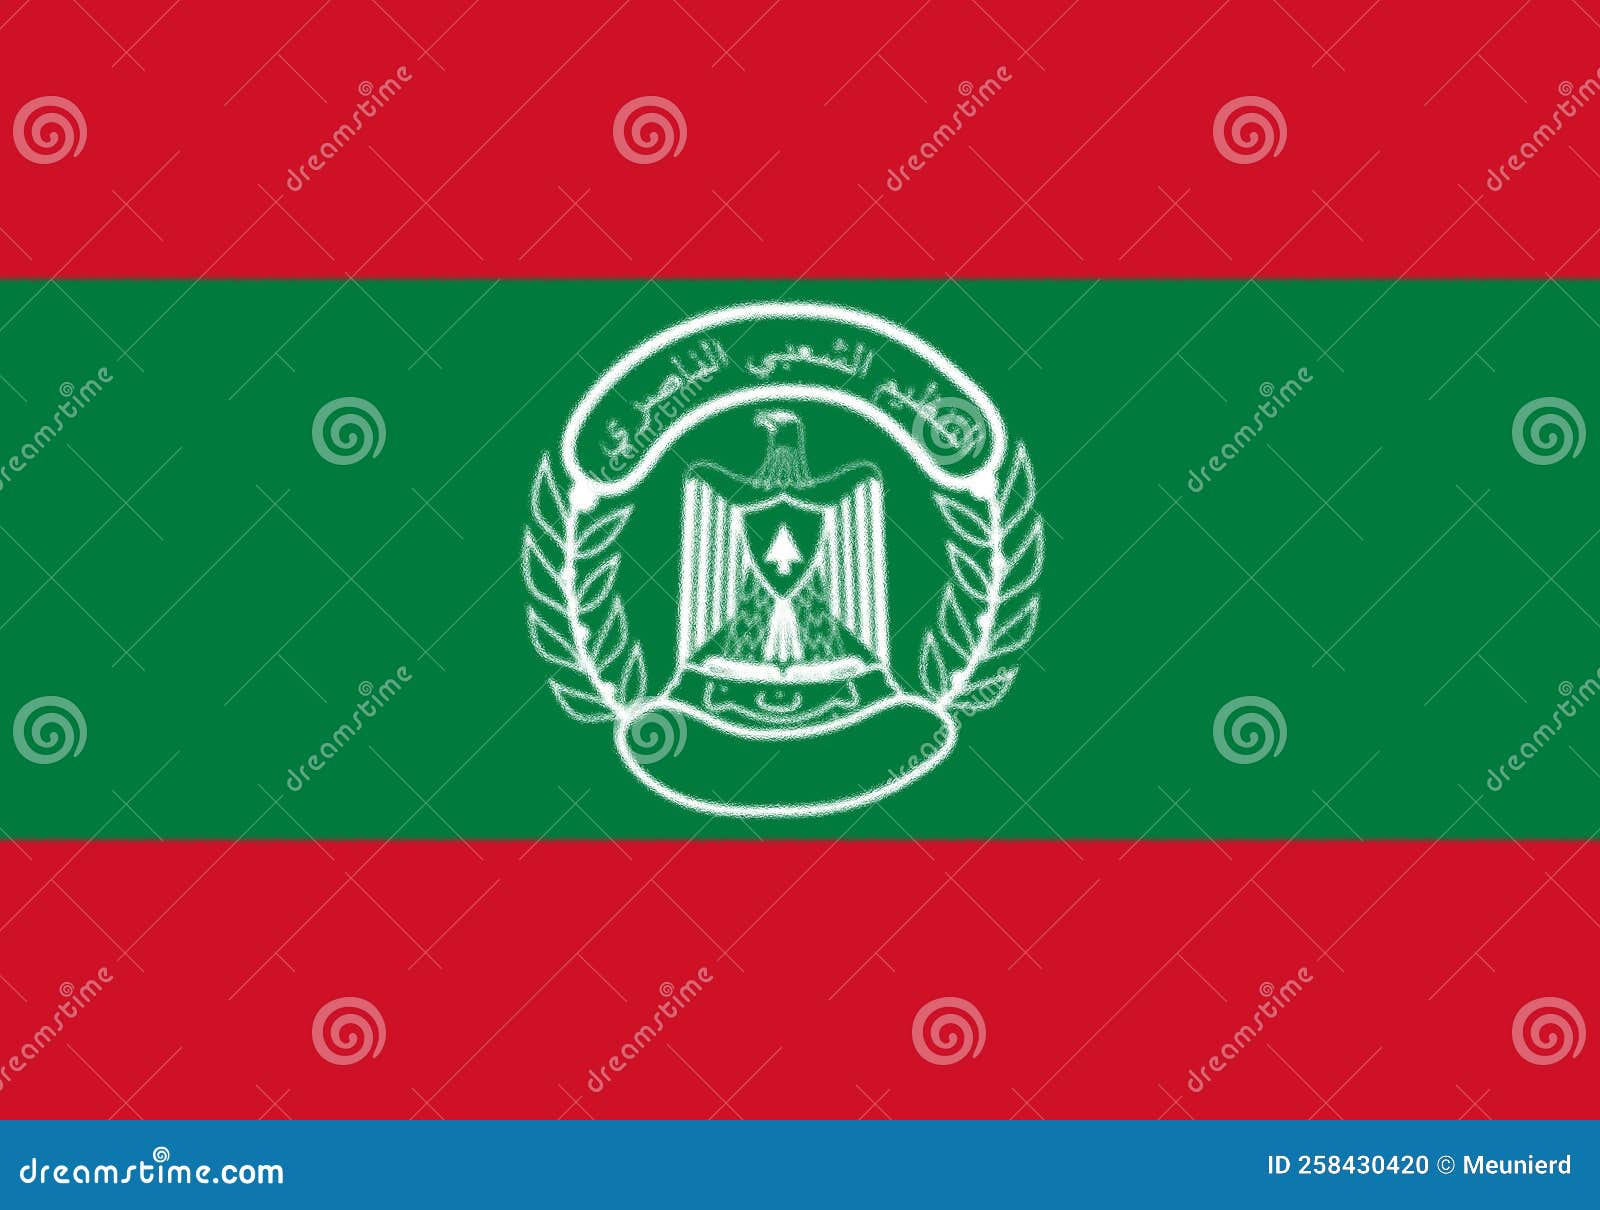 glossy glass flag of popular nasserist organization